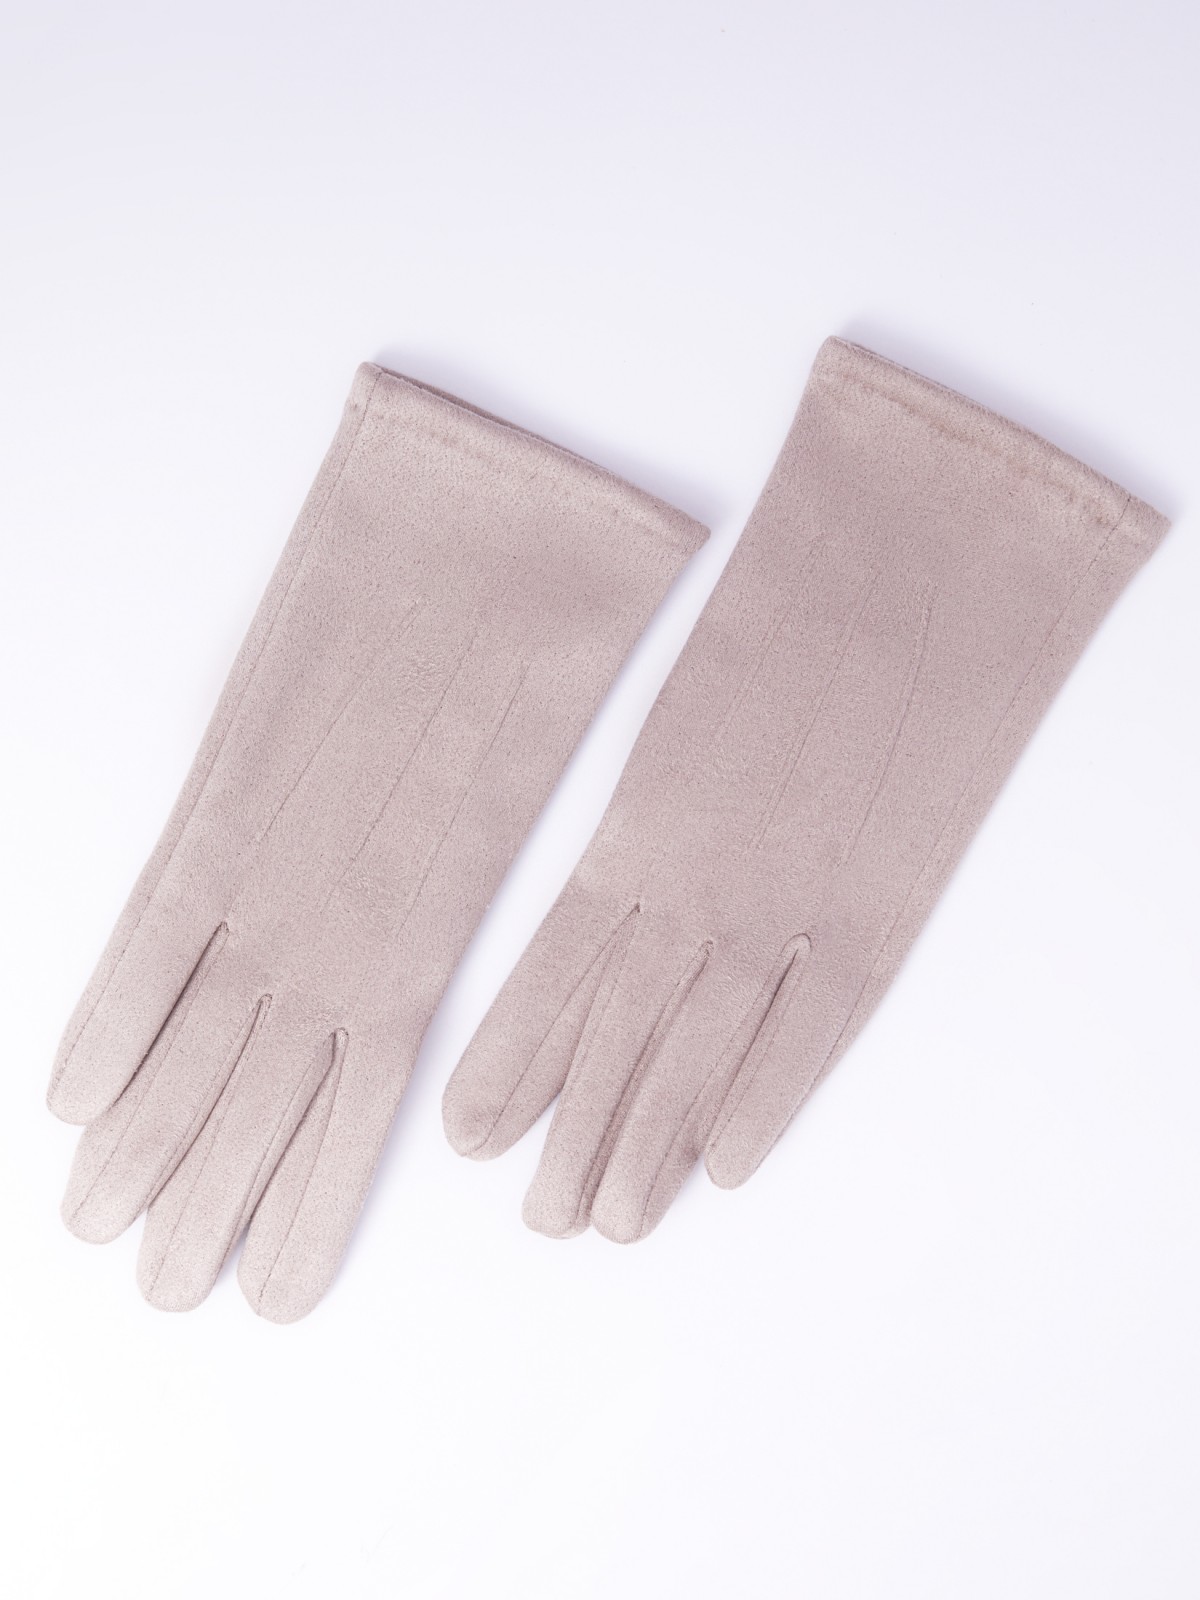 Утеплённые текстильные перчатки с функцией Touch Screen zolla 023339659025, цвет бежевый, размер S